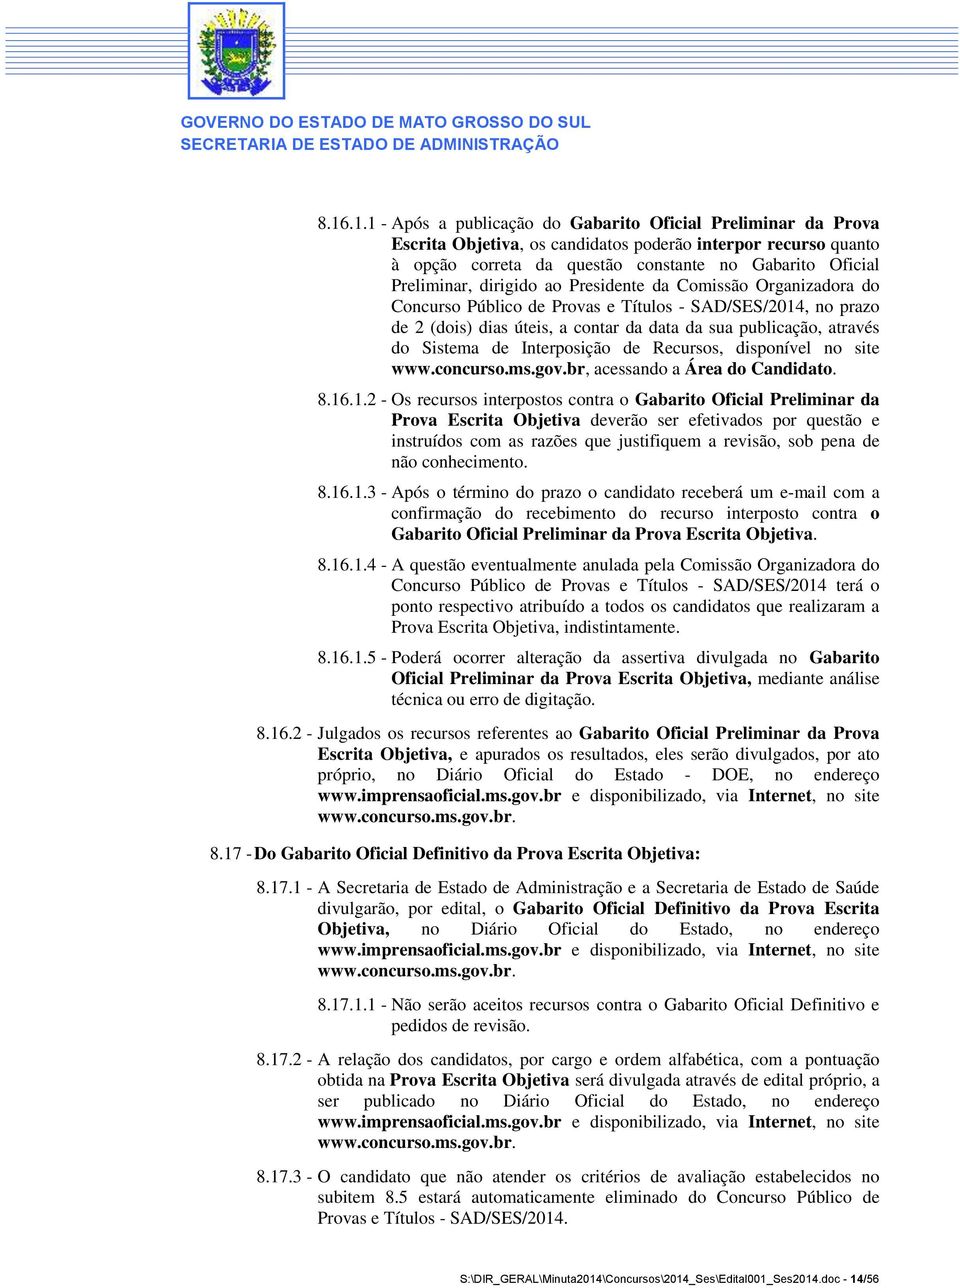 Sistema de Interposição de Recursos, disponível no site www.concurso.ms.gov.br, acessando a Área do Candidato. 8.16